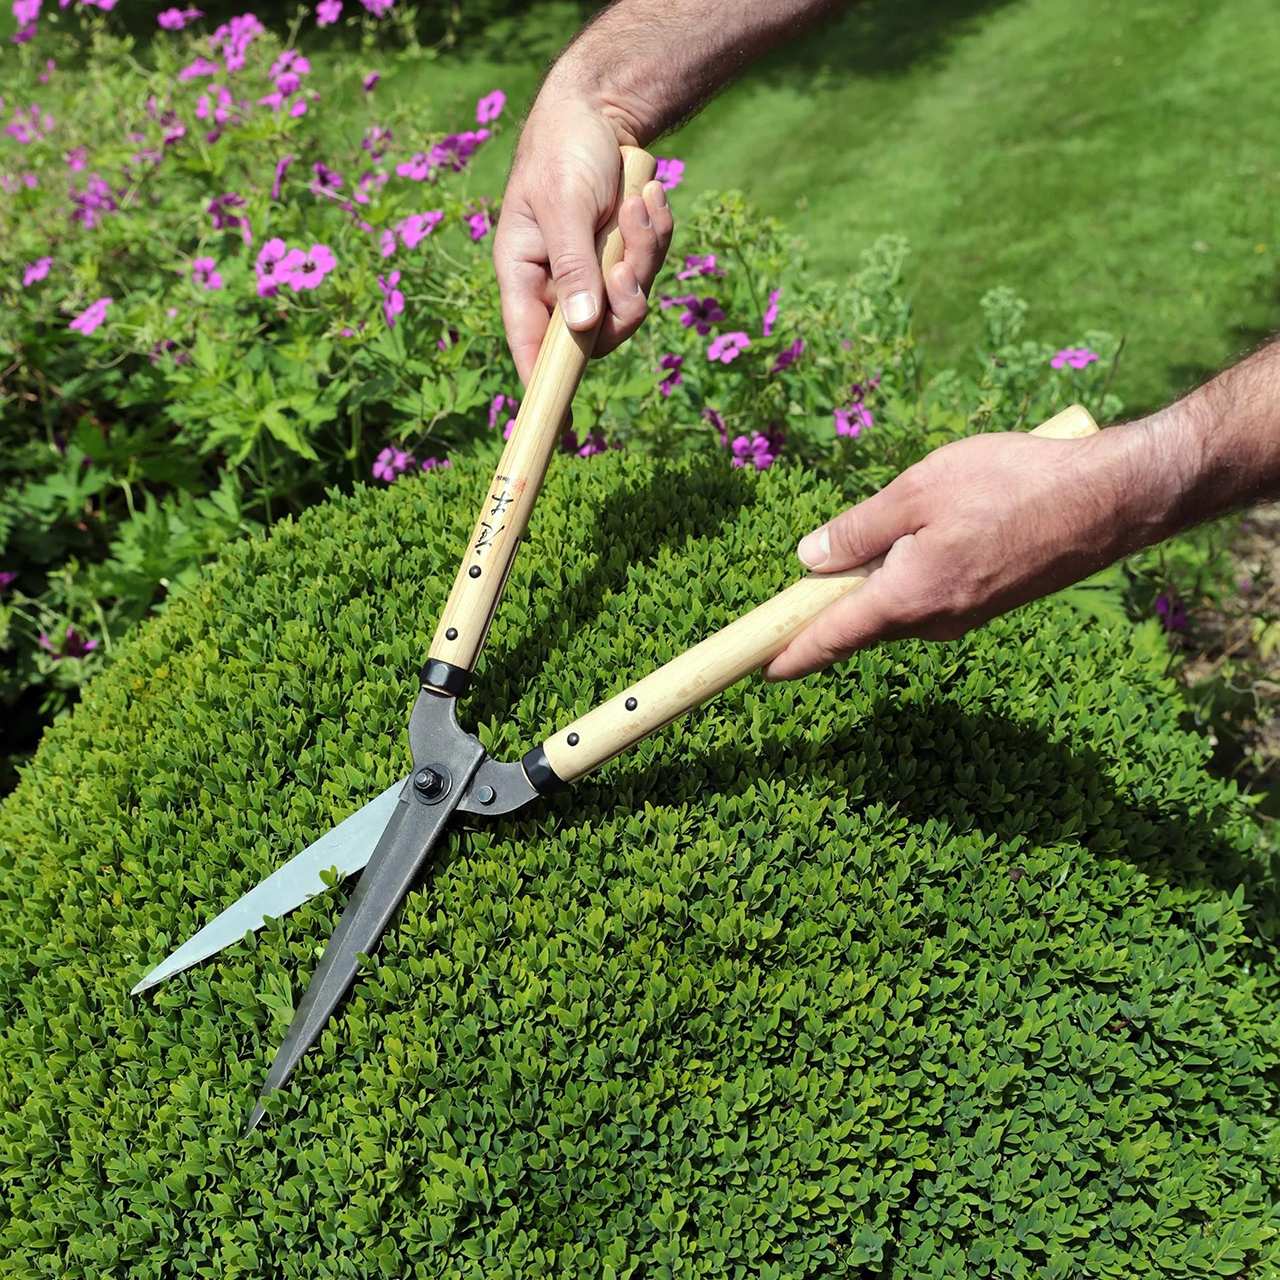 Hướng dẫn dùng kéo cắt cỏ và chăm sóc khu vườn như chuyên gia